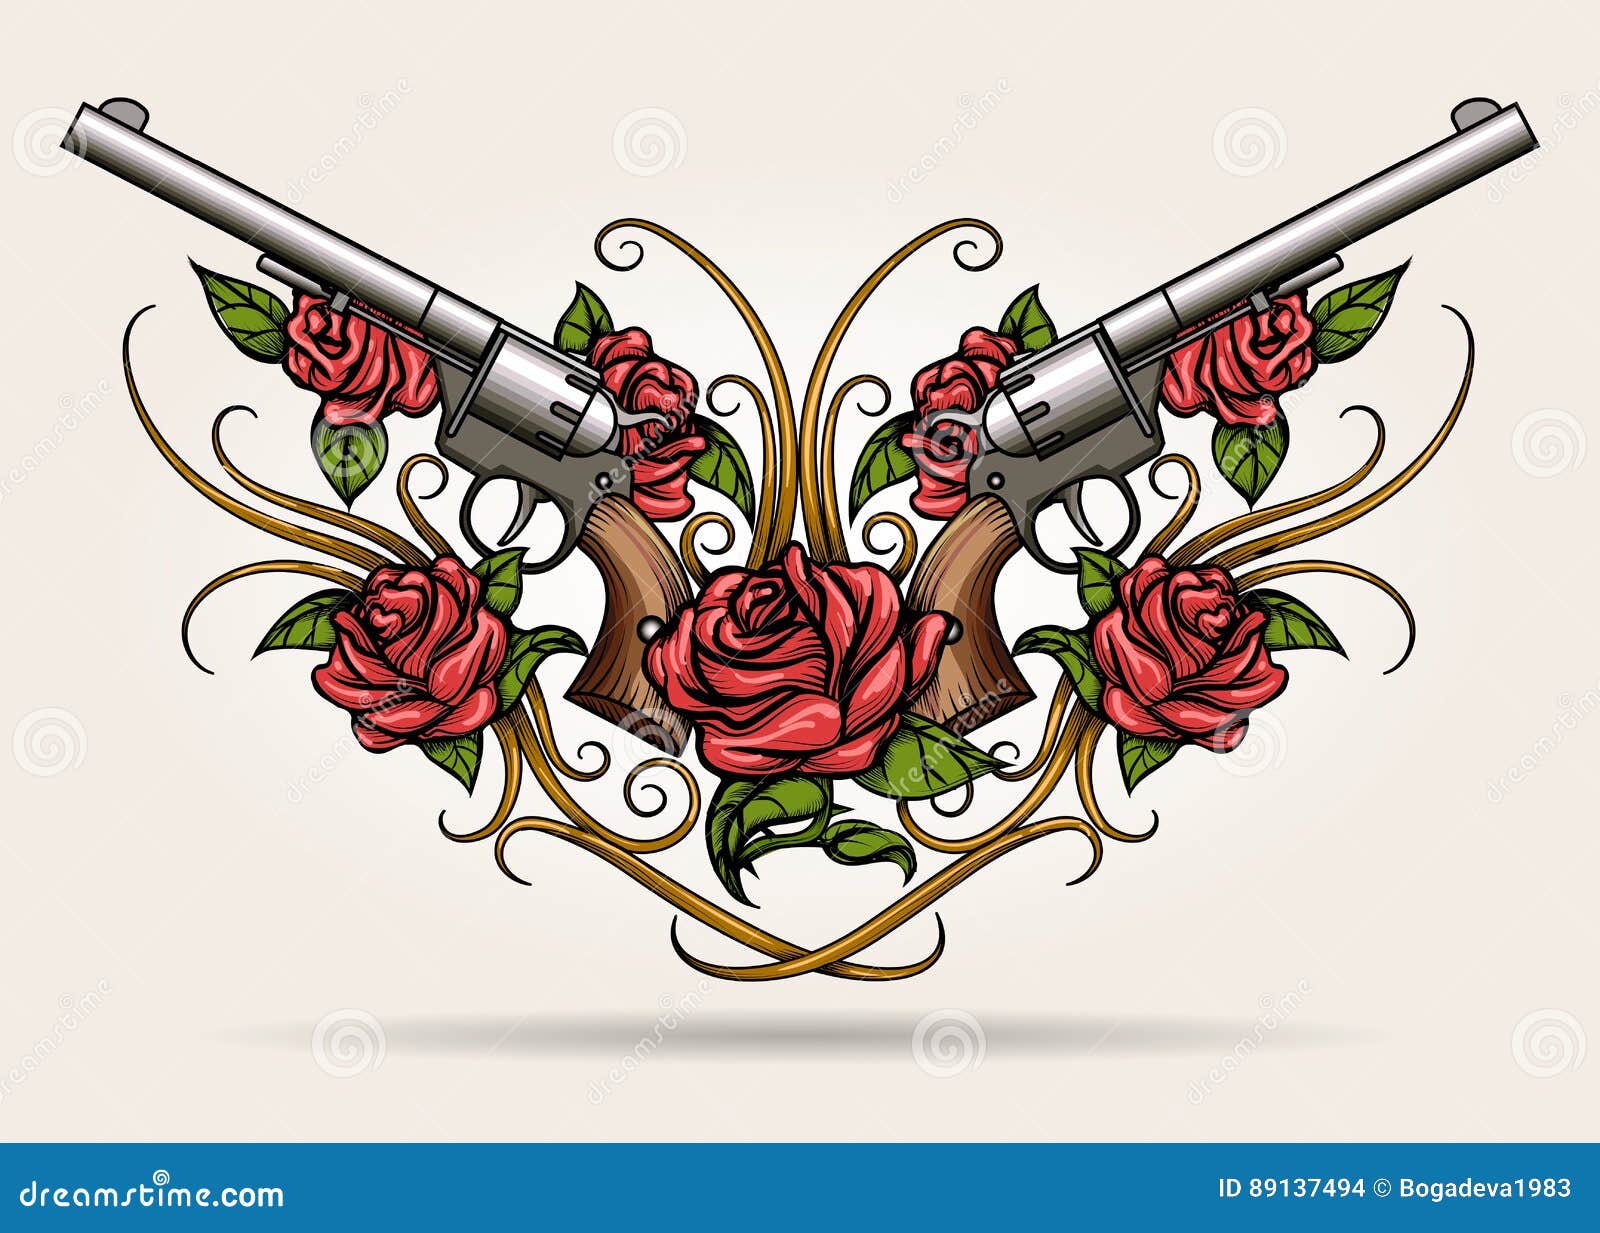 Roses  Revolver Tattoo